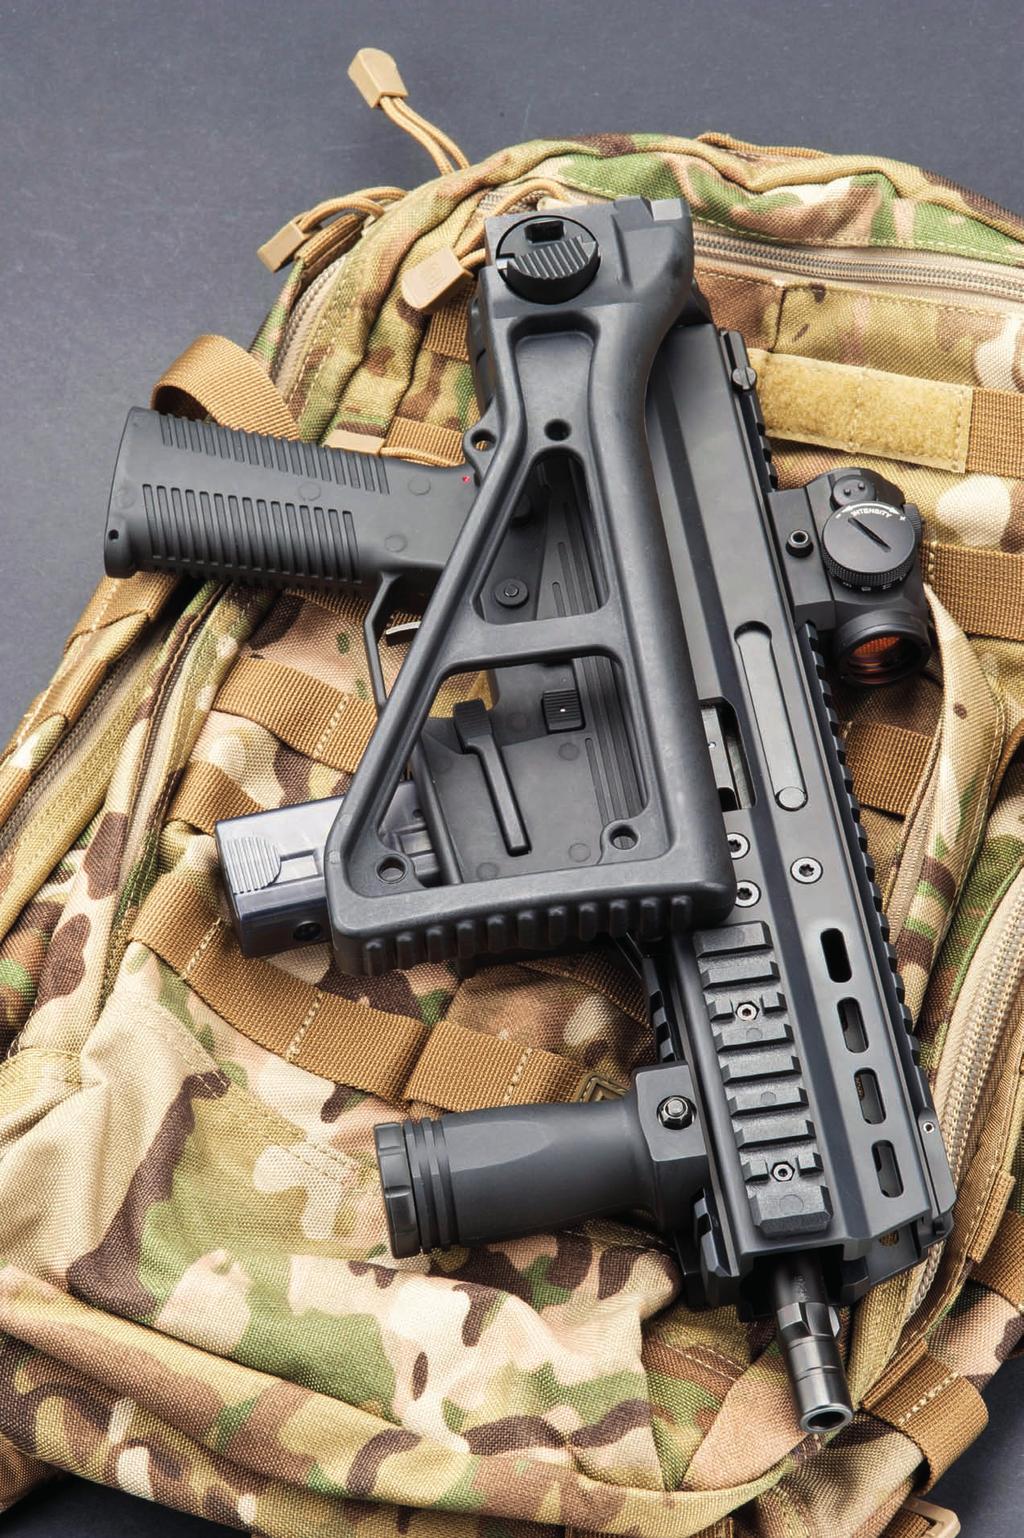 052 Ottima via di mezzo Nata per gli impieghi militari e di polizia, l Advanced Police Carbine è di Matteo Brogi ora disponibile anche per il mercato civile, in calibro 9 mm così come in.45 ACP.